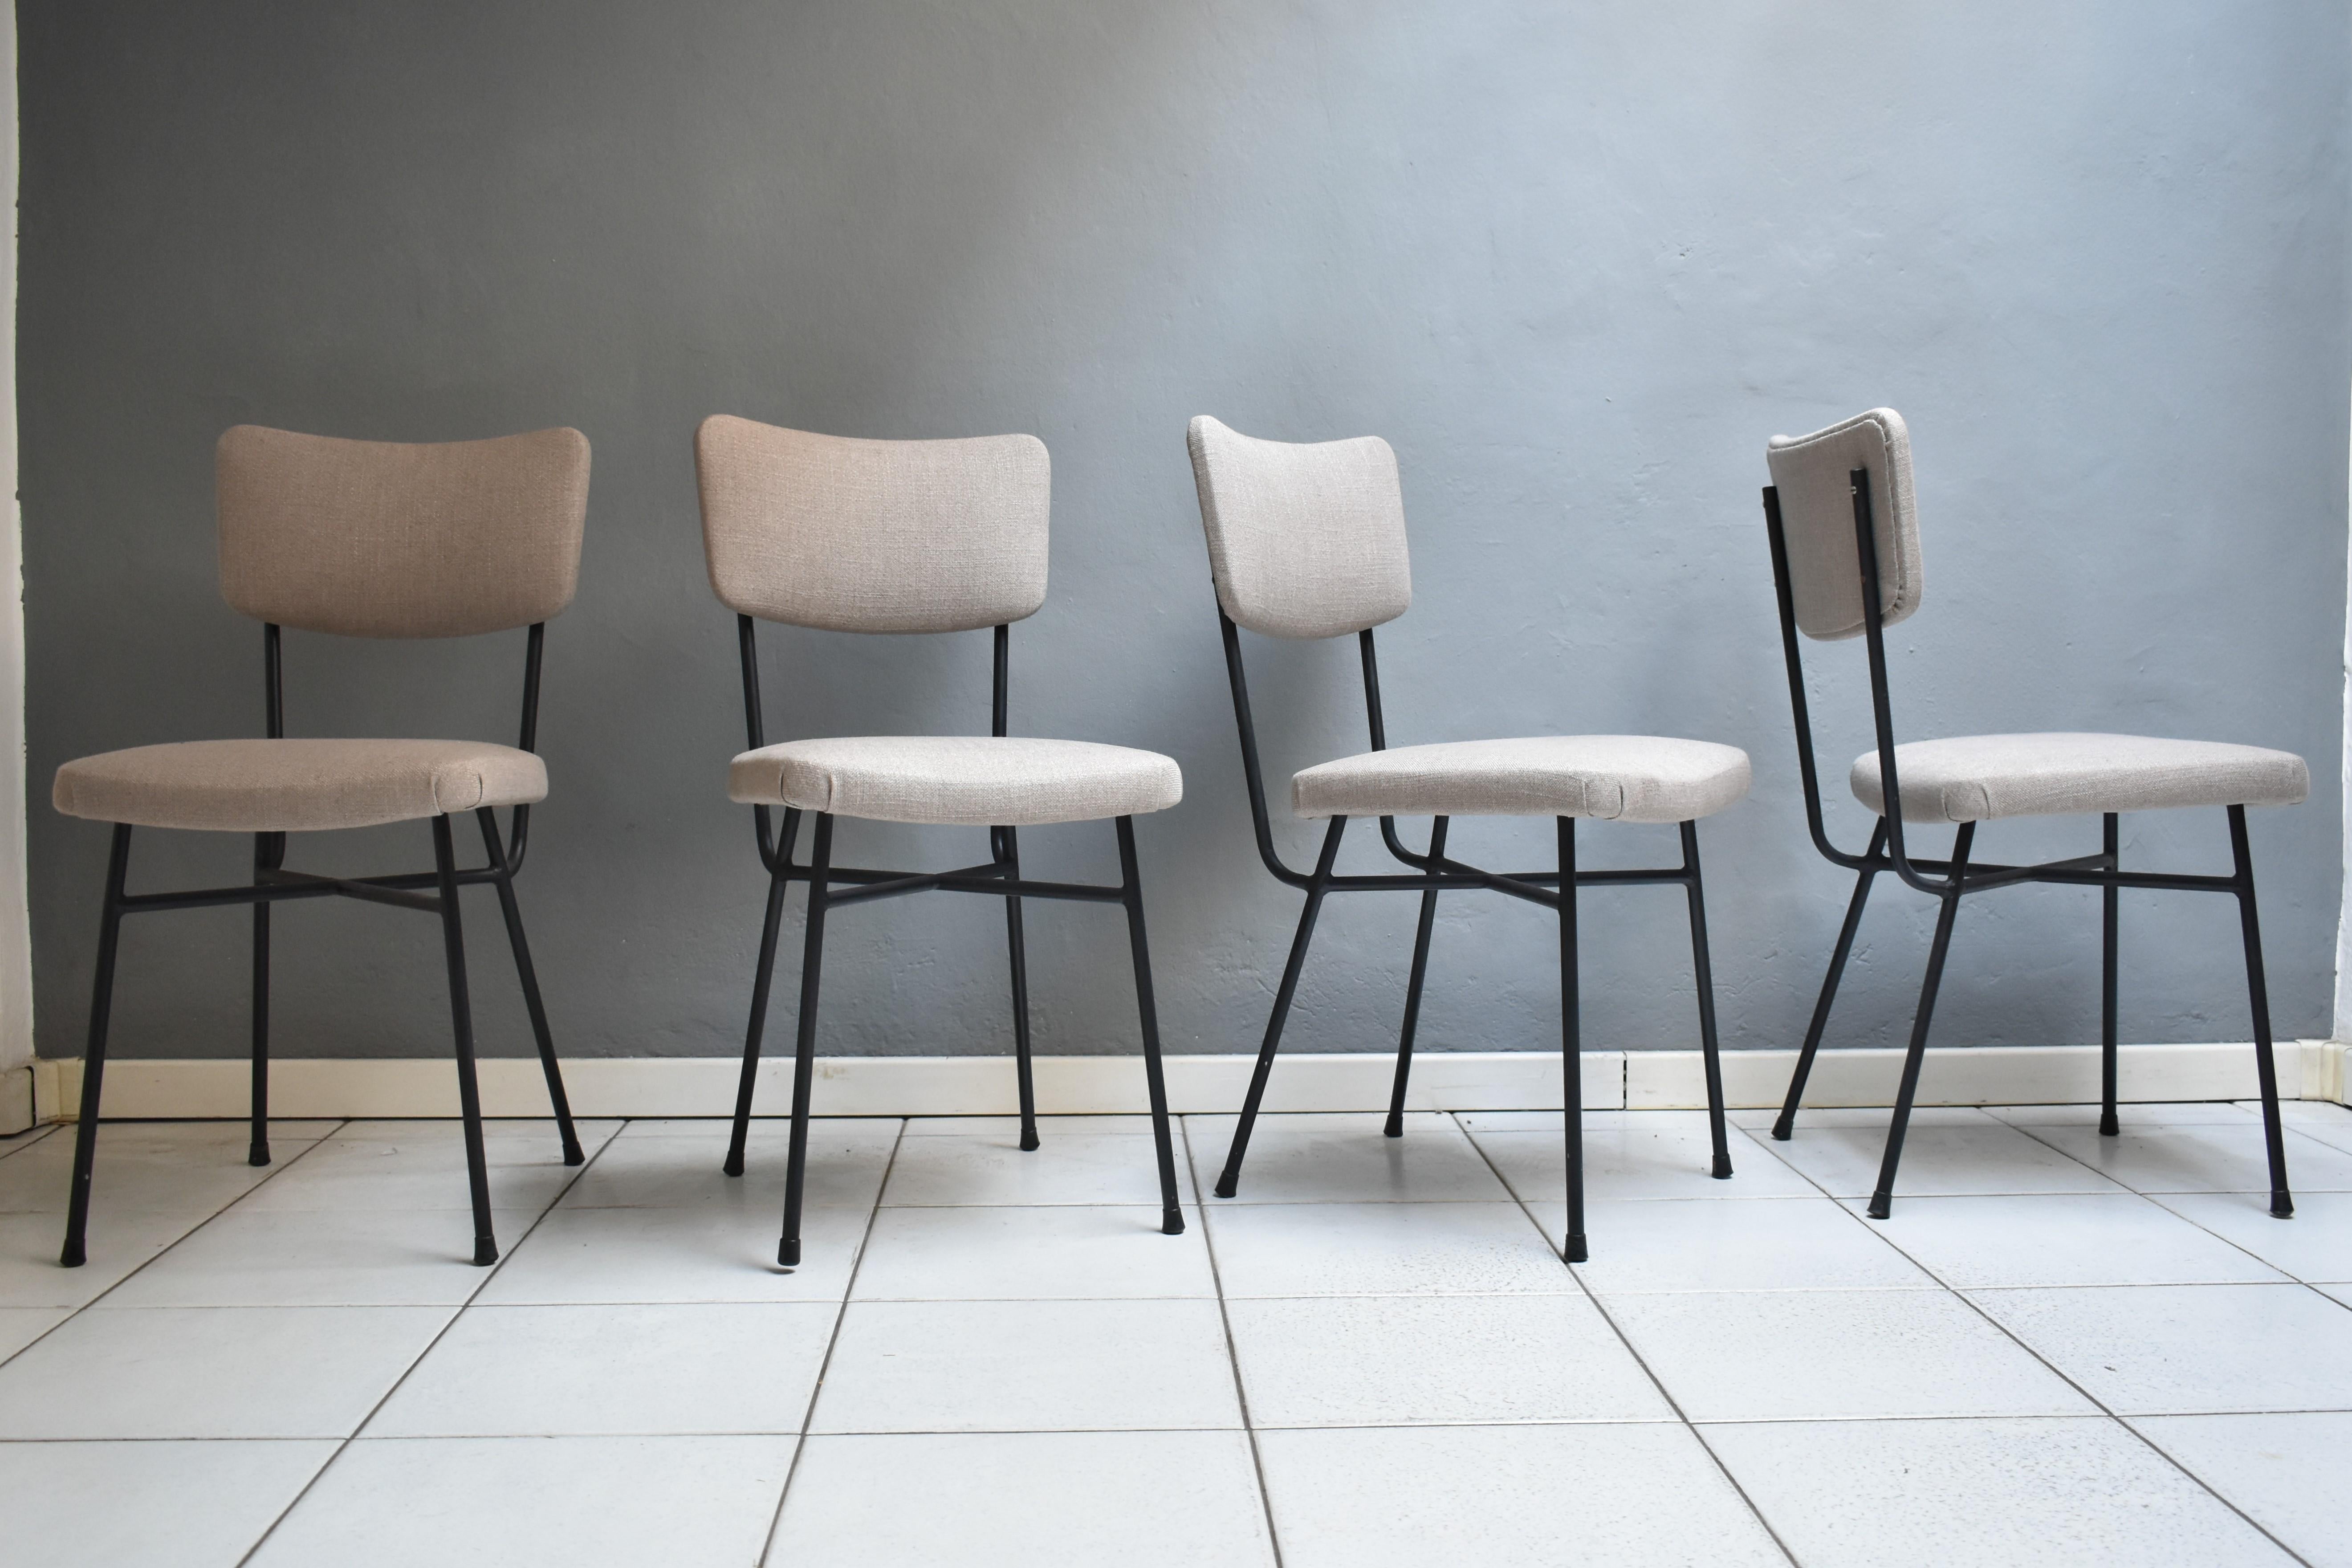 Ensemble de quatre chaises vintage des années 1960, fabrication italienne.
Les chaises pouvant être placées dans la salle à manger ont une structure en fer noir avec un dossier et une assise en tissu gris clair